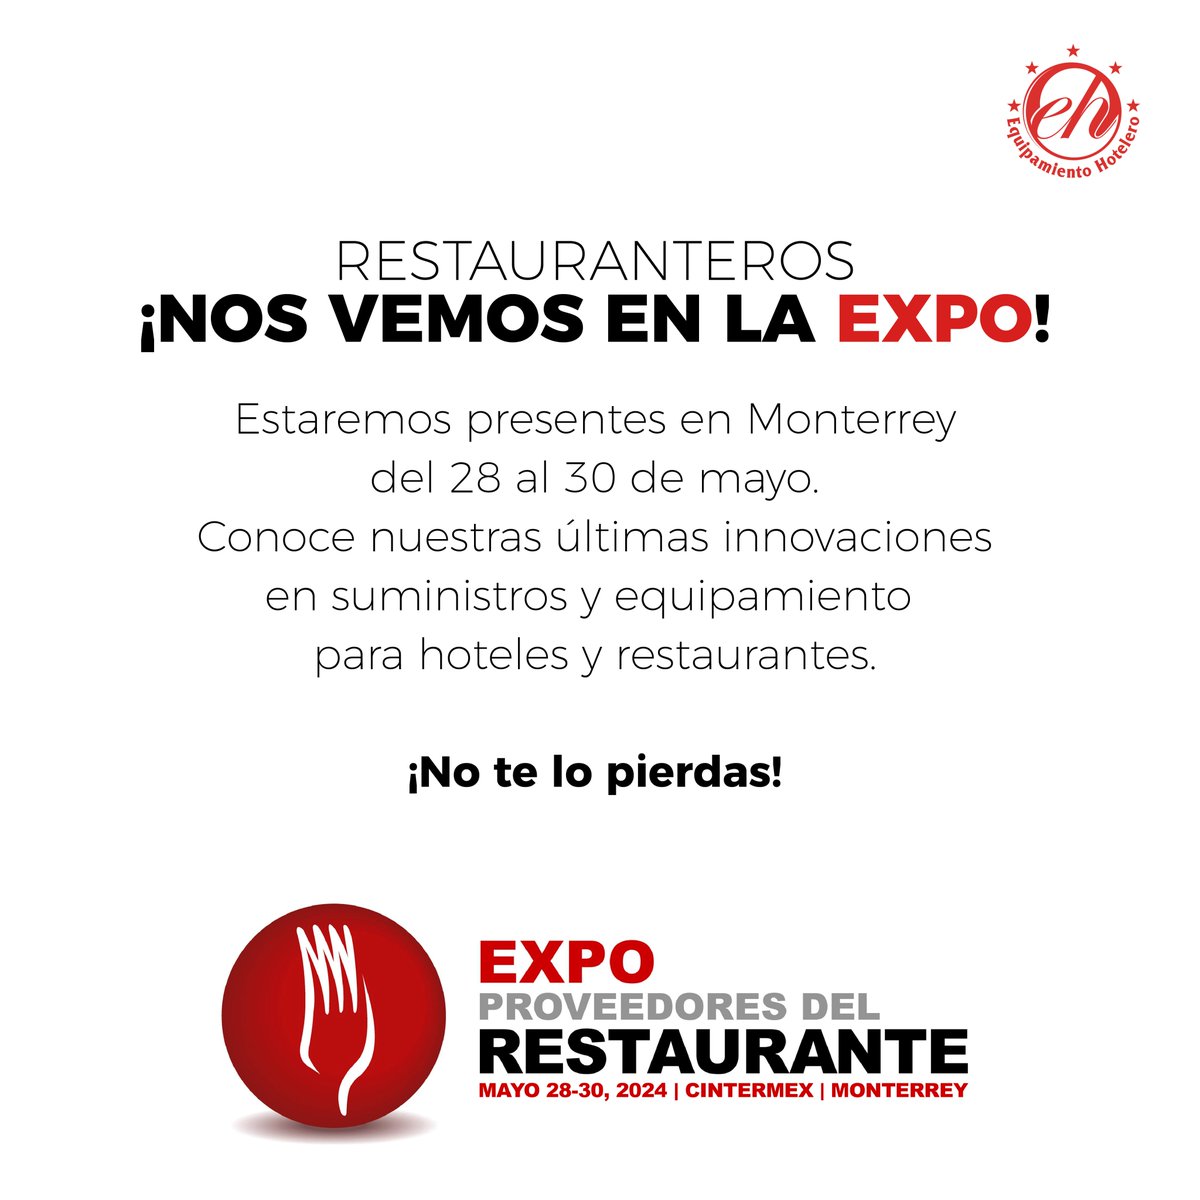 ¡Nos vemos en la Expo Proveedores del Restaurante 2024! 
Equipamiento Hotelero de México estará presente en la Expo Proveedores del Restaurante 2024 en Monterrey del 28 al 30 de mayo. ¡No te lo pierdas! #ExpoProveedores2024 #EquipamientoHotelero #Innovación